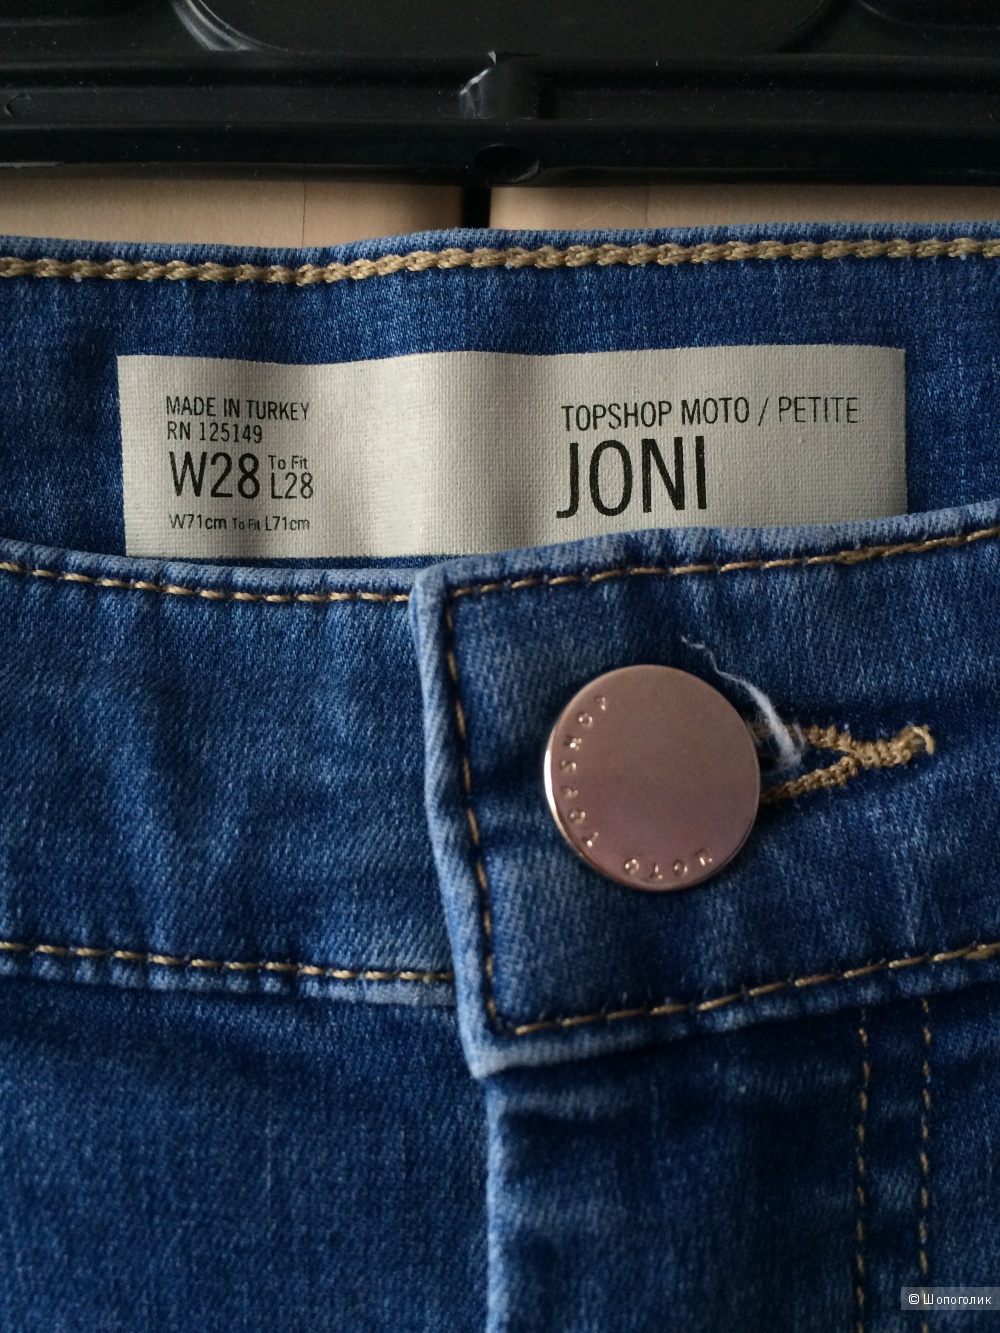 TOPSHOP PETITE MOTO Blue Ripped Joni Jeans.